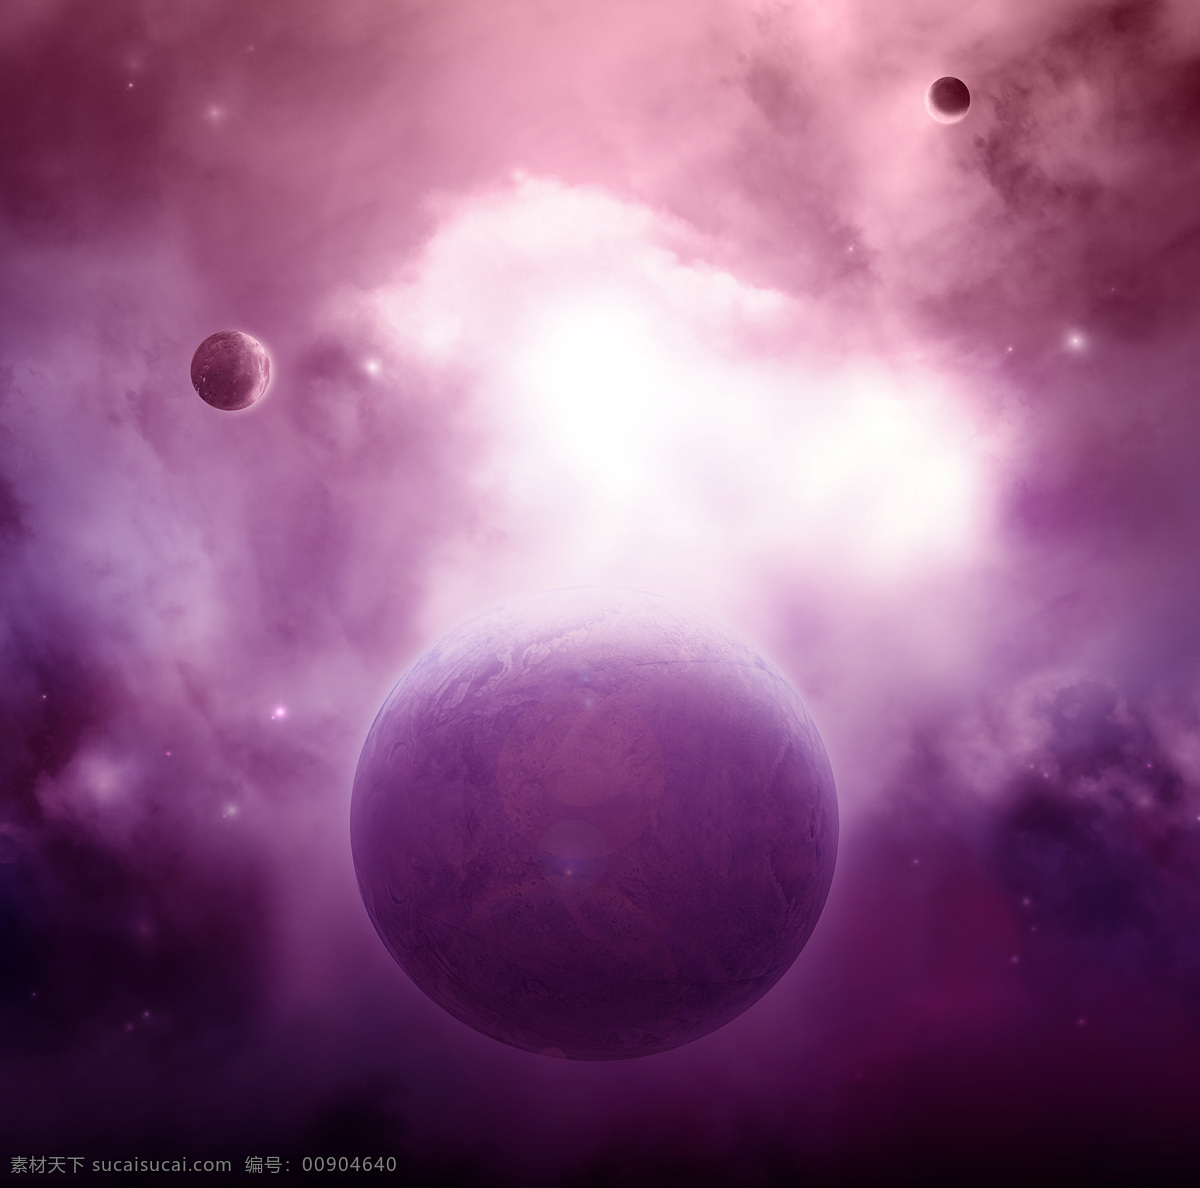 粉色 高清 科学研究 神秘 现代科技 星际 星空 粉红色的星球 壮美 星球 云彩 宇宙 天体 炫彩 矢量图